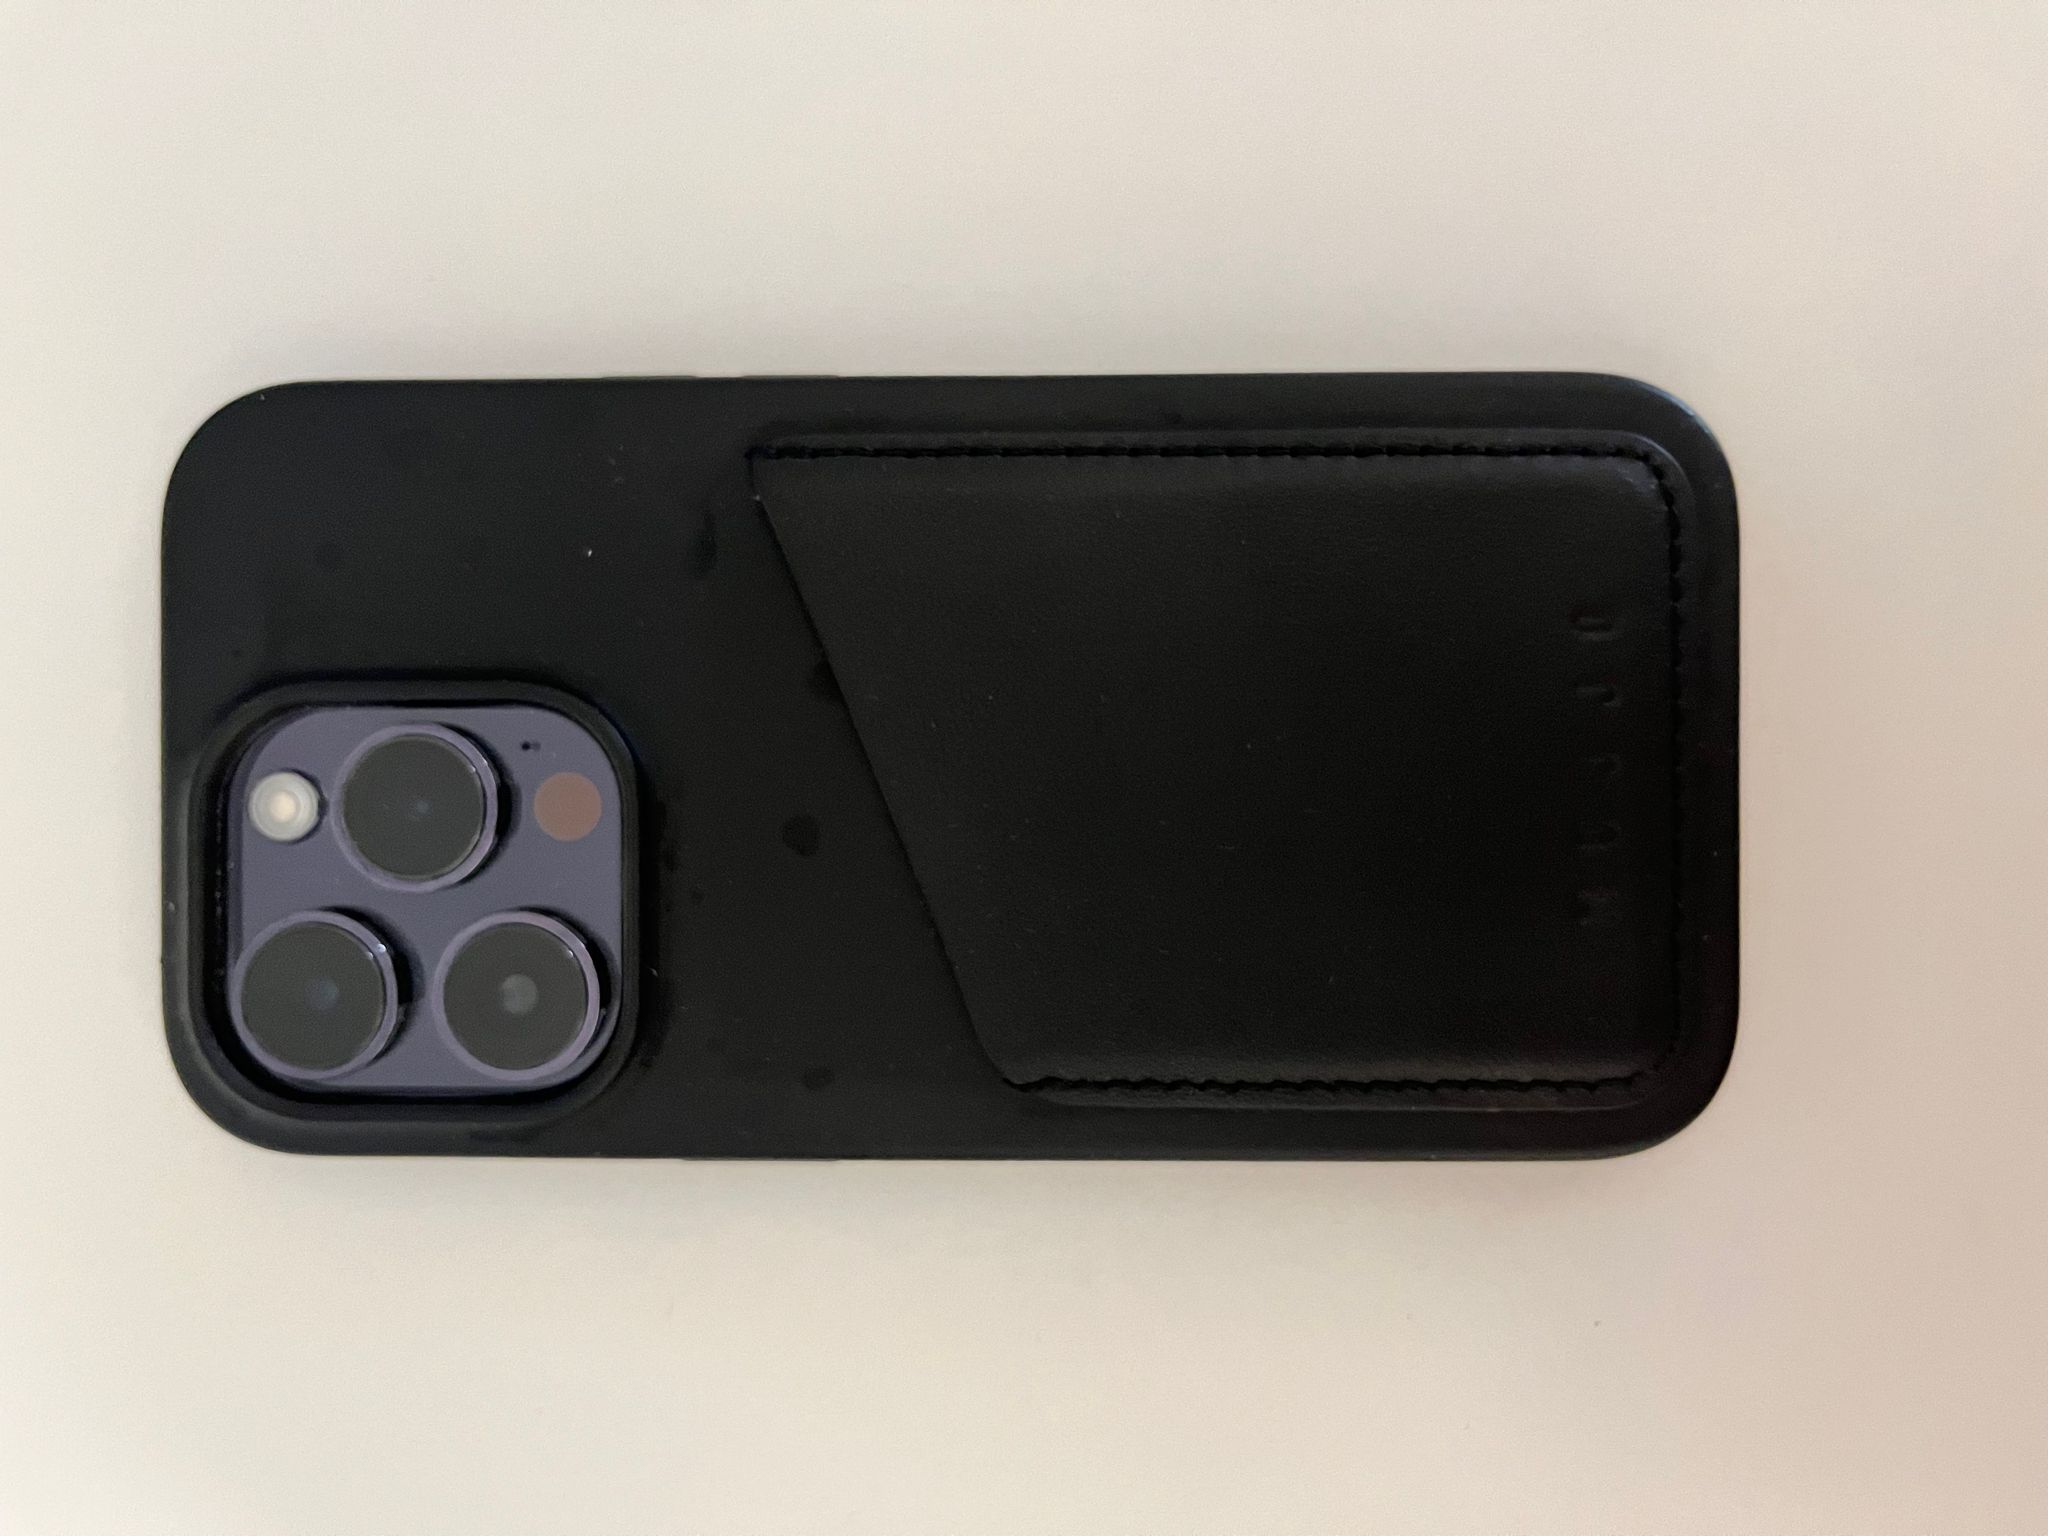 In prova la custodia in pelle Mujjo MagSafe per iPhone 14 Pro con tasca portafoglio